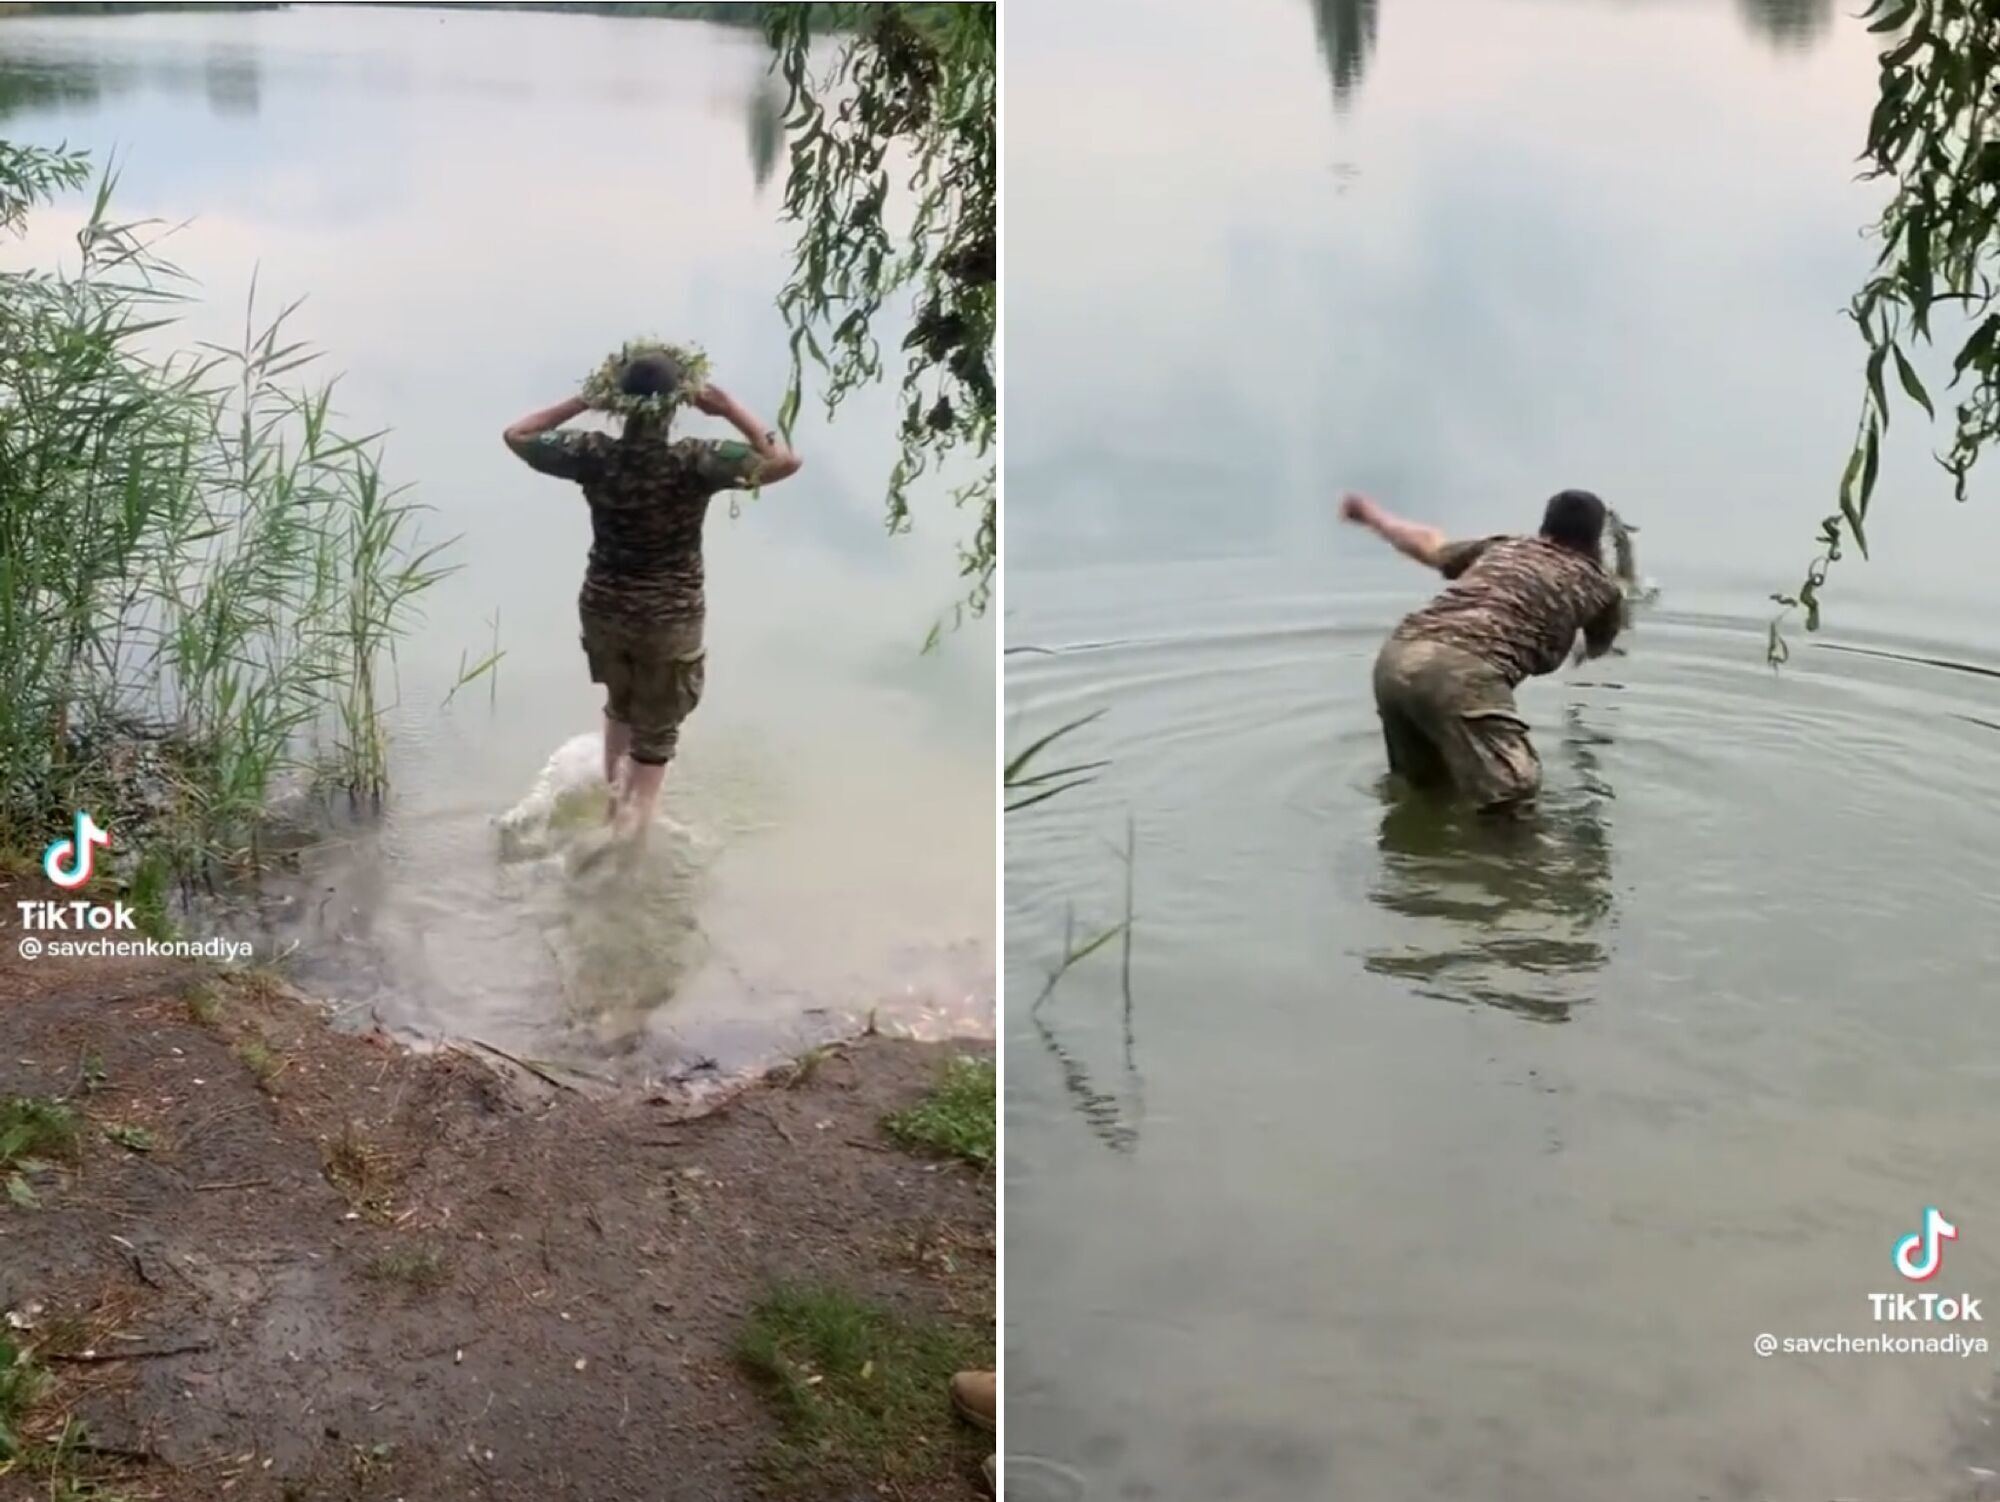 Савченко в военной форме забралась в реку и пустила по воде венок. Он не поплыл